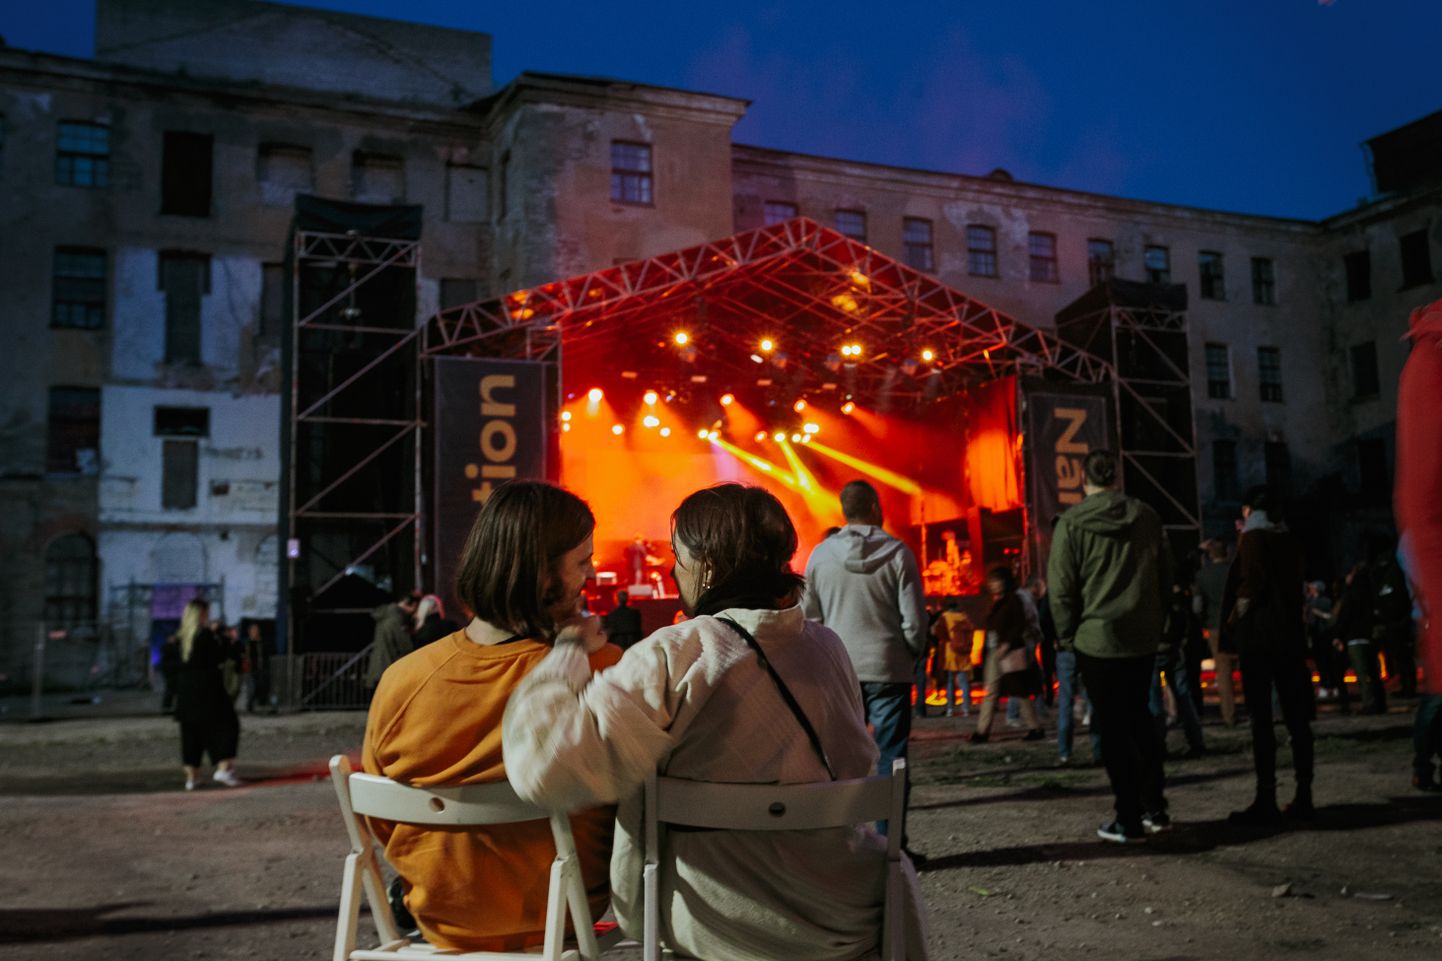 Muusikafestival Station Narva Kreenholmis − üks näide Eesti riigi kultuuridessandi kohta.